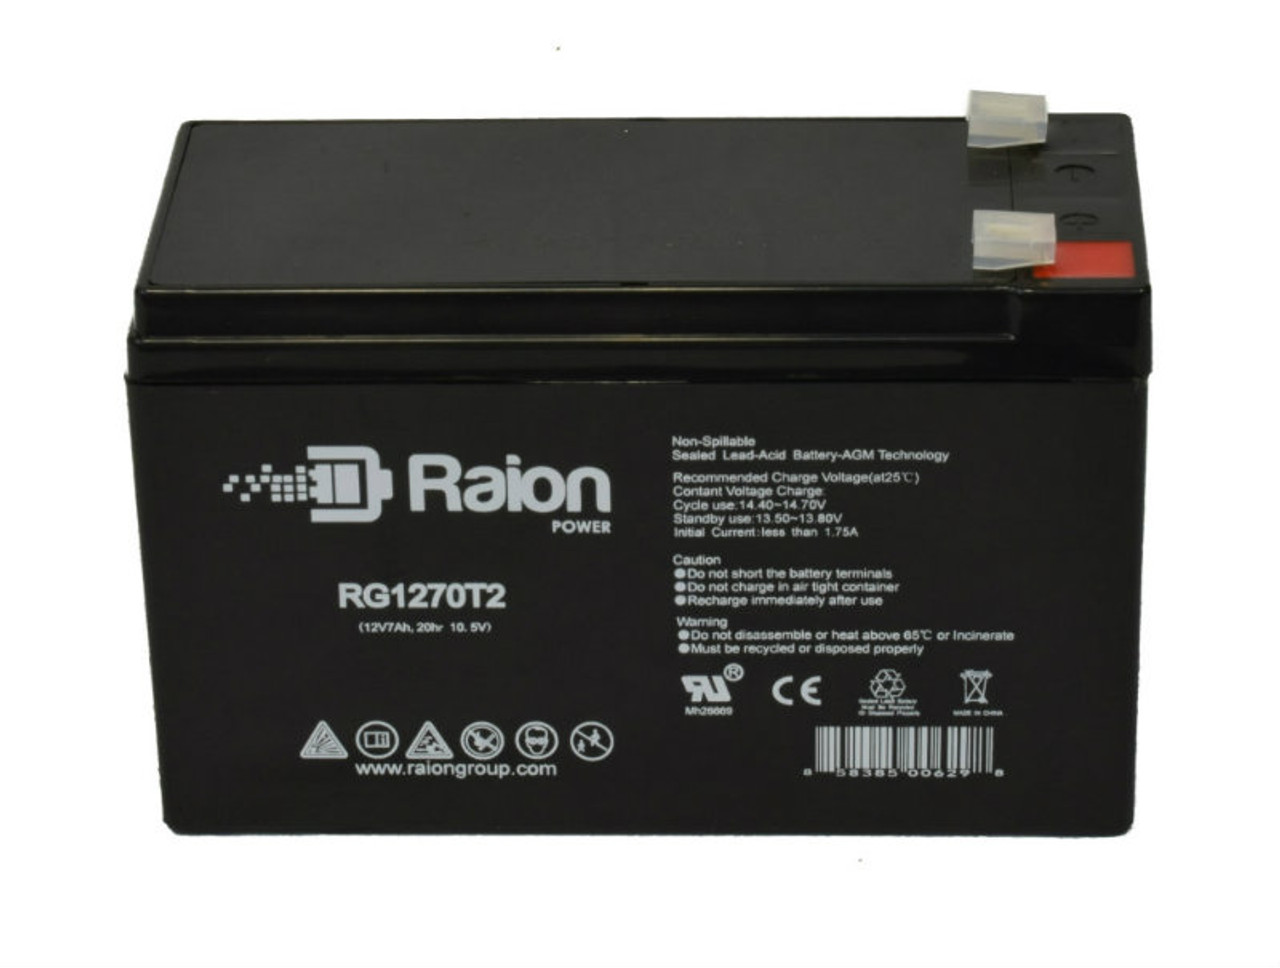 Raion Power RG1270T1 12V 7Ah Lead Acid Battery for GB SB12-7.2